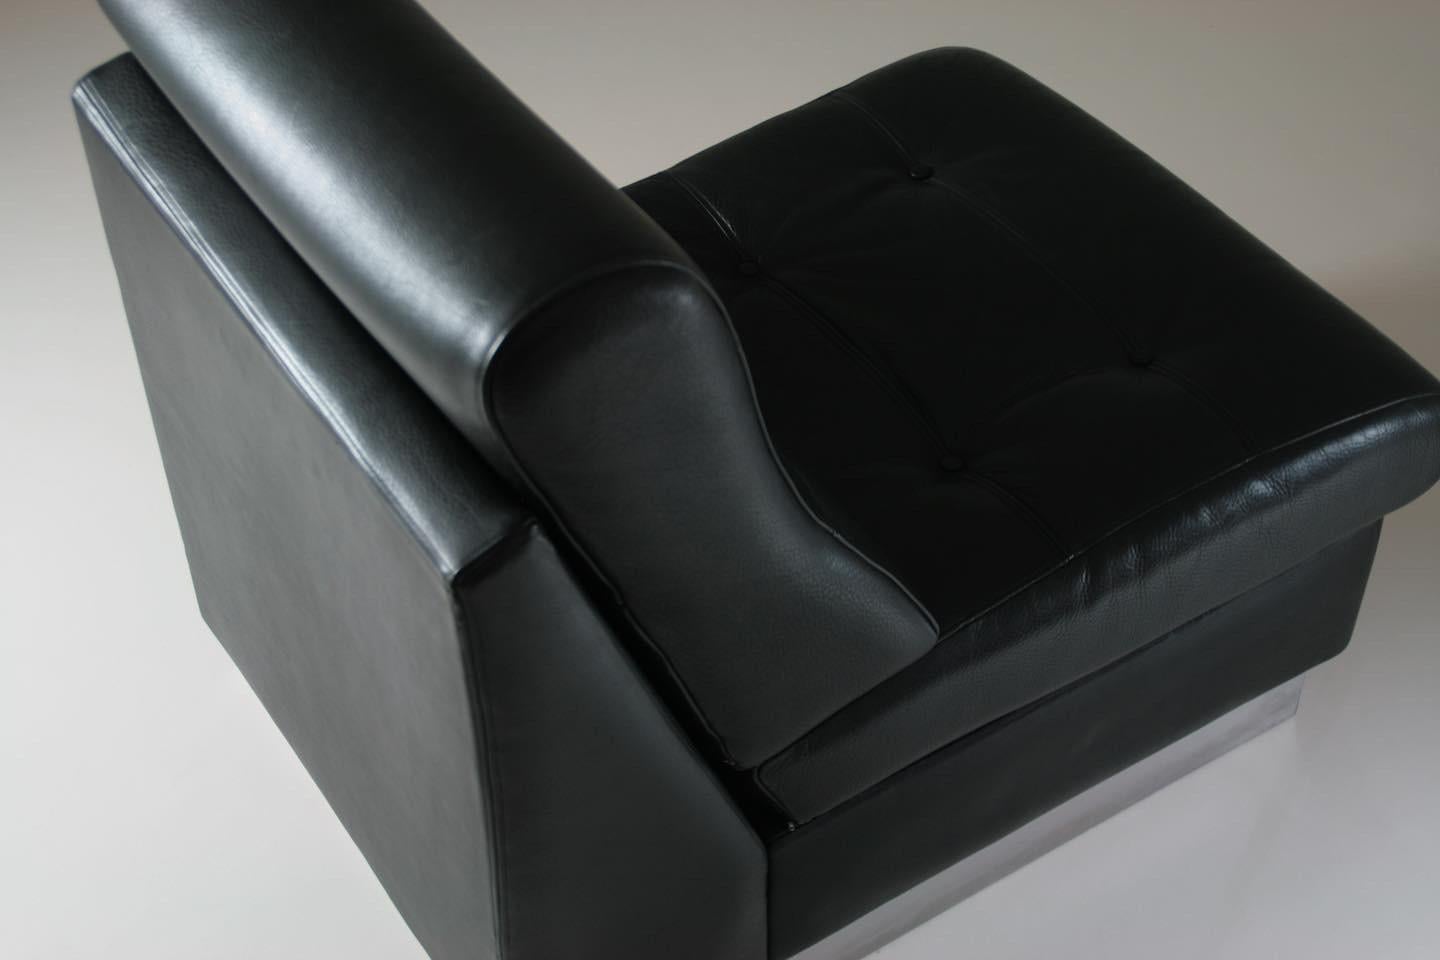 Chaise basse en cuir noir de Jacques Charpentier, fabriquée en France dans les années 1970. Base en métal chromé sur laquelle repose le siège en cuir épais de haute qualité. Une rayure superficielle et 2 petites marques blanches discrètes sur le bas